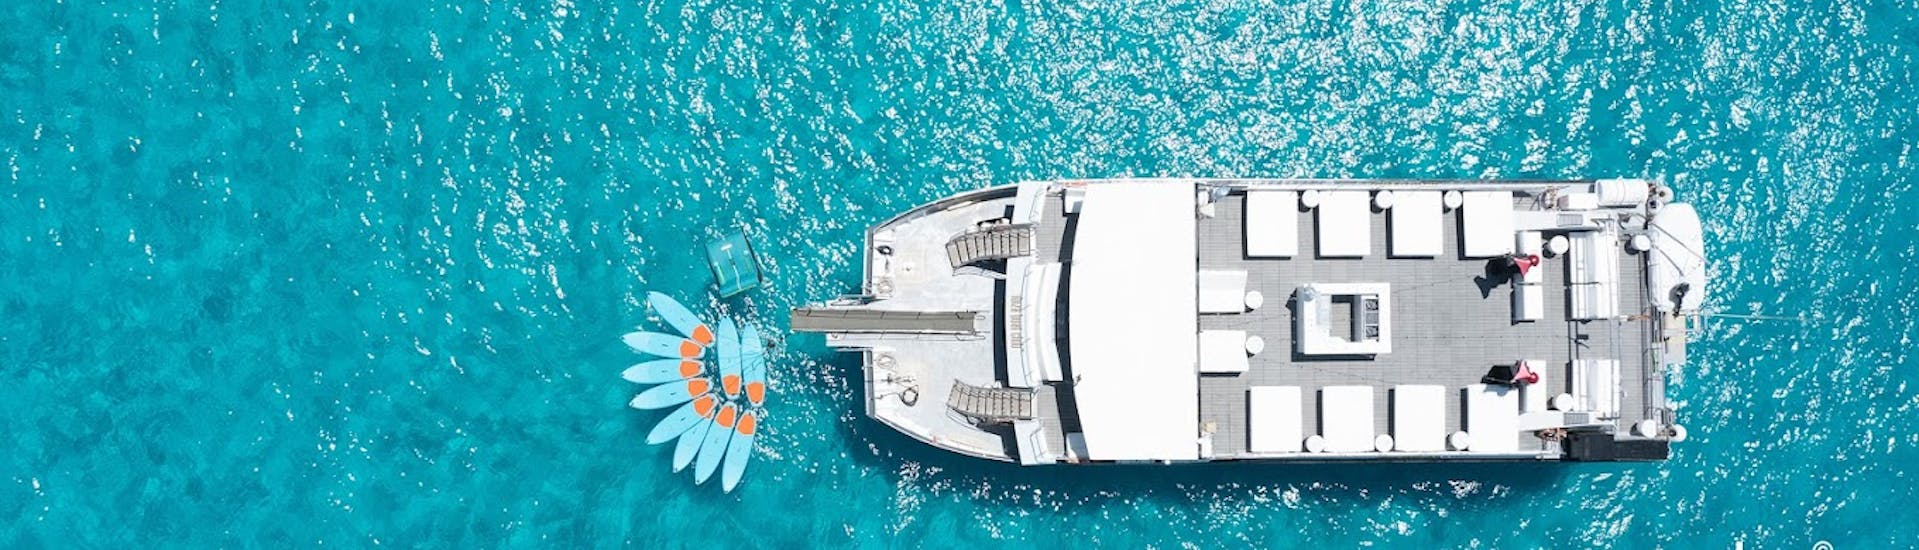 Un gran catamarán disfrutando en una fiesta en barco por Ibiza con barra libre y DJ con Ibiza Boat Club.